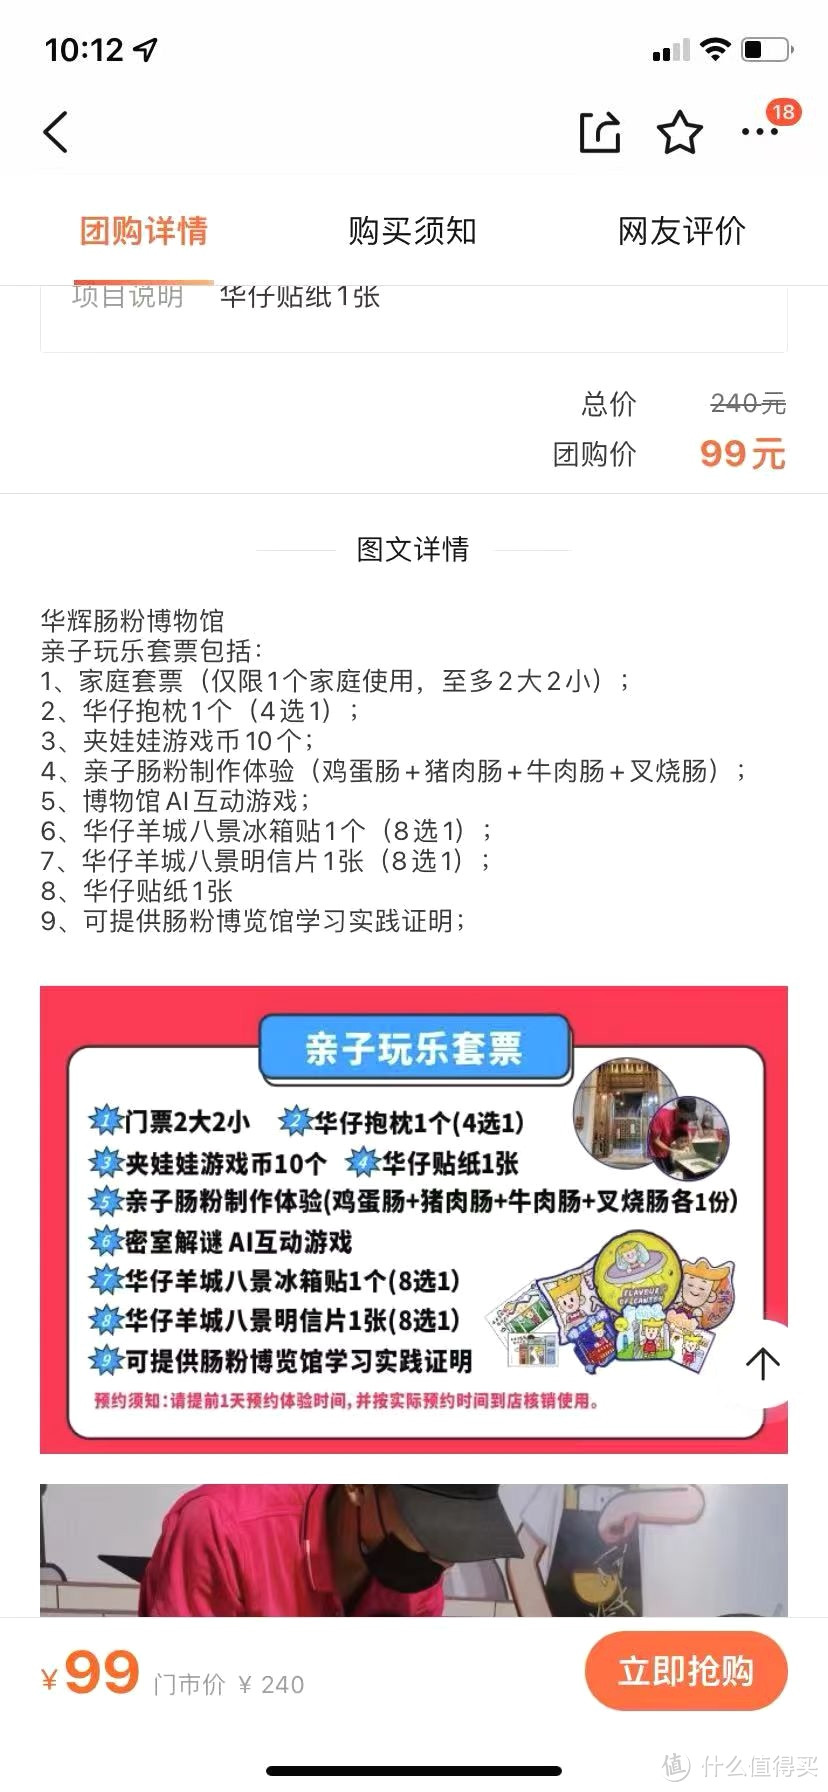 推荐一下广州亲子游活动:华辉拉肠博物馆